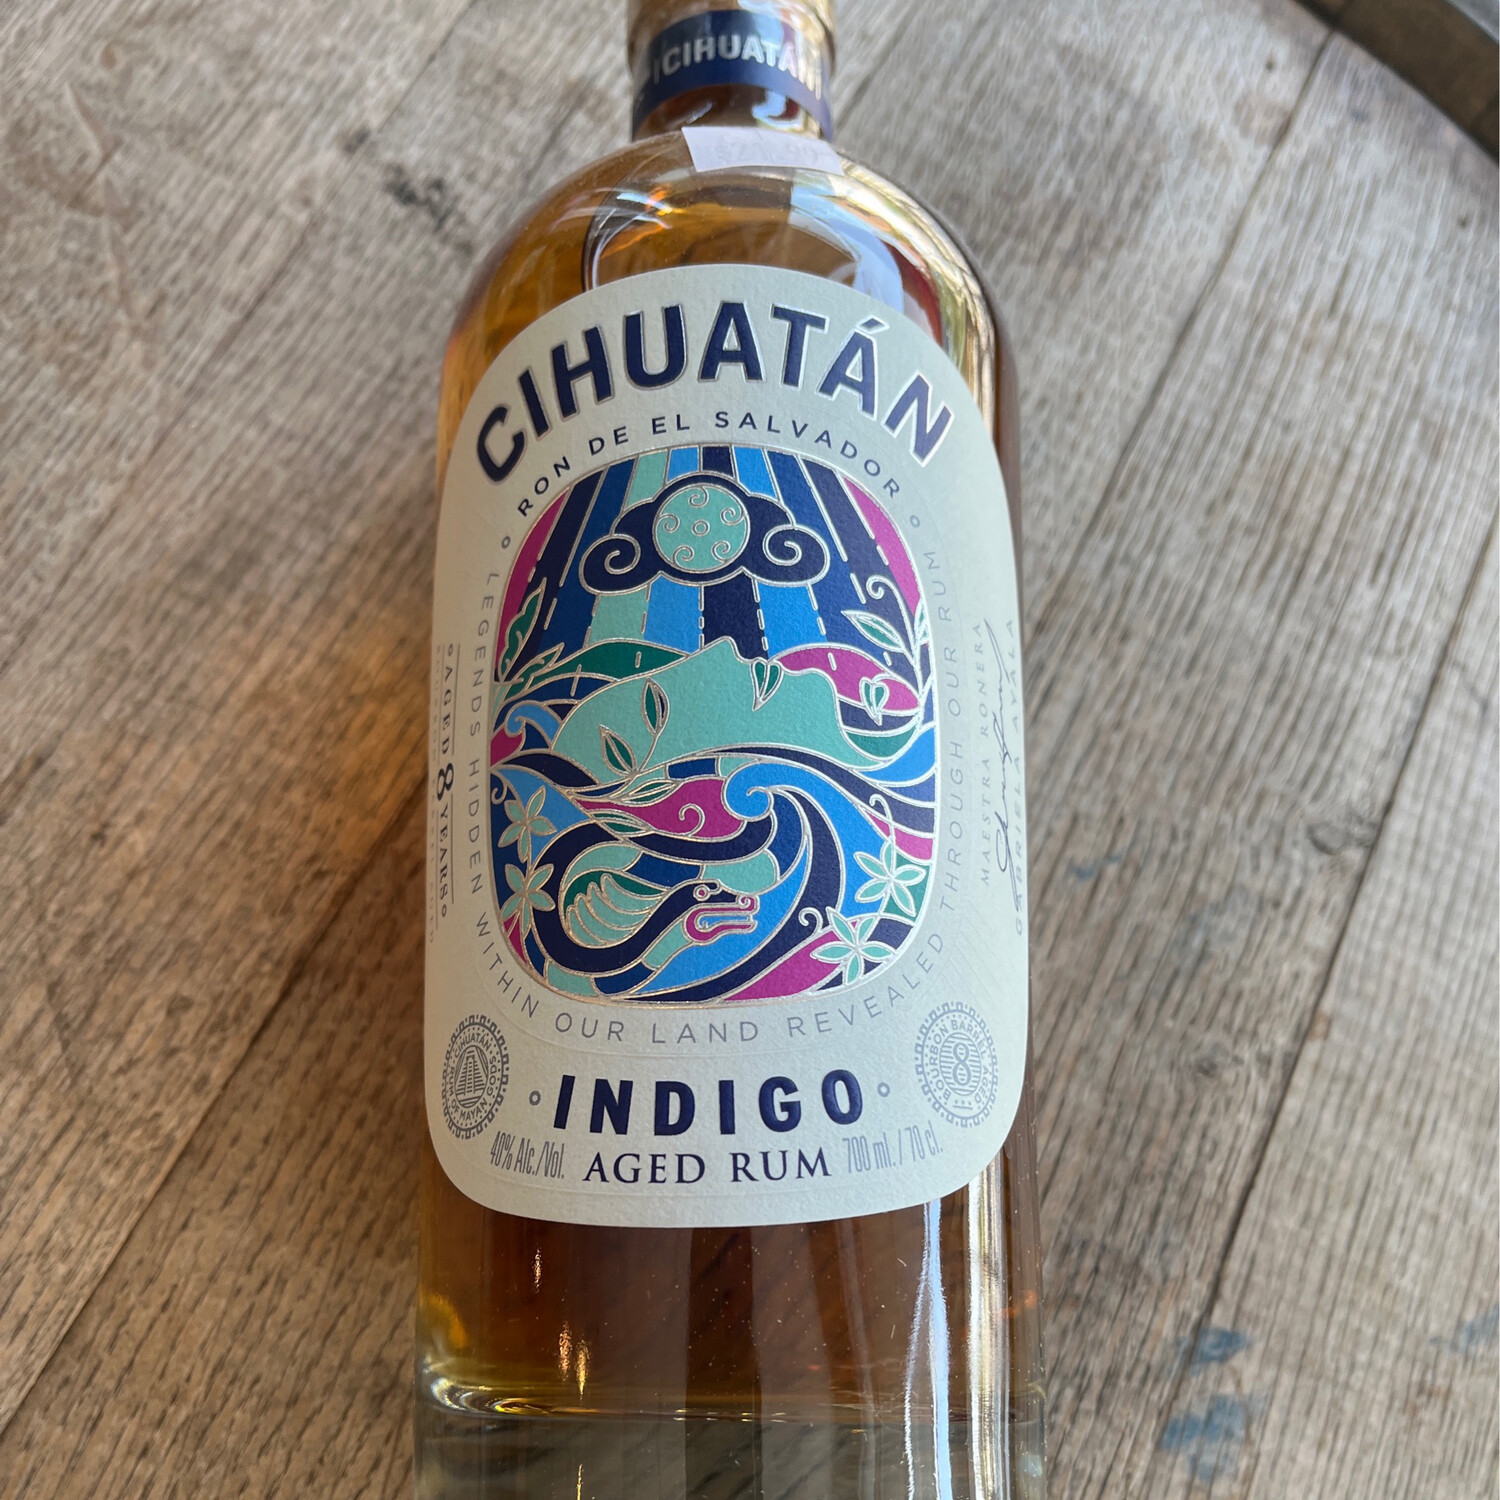 Cihuatan Indigo Dark Rum